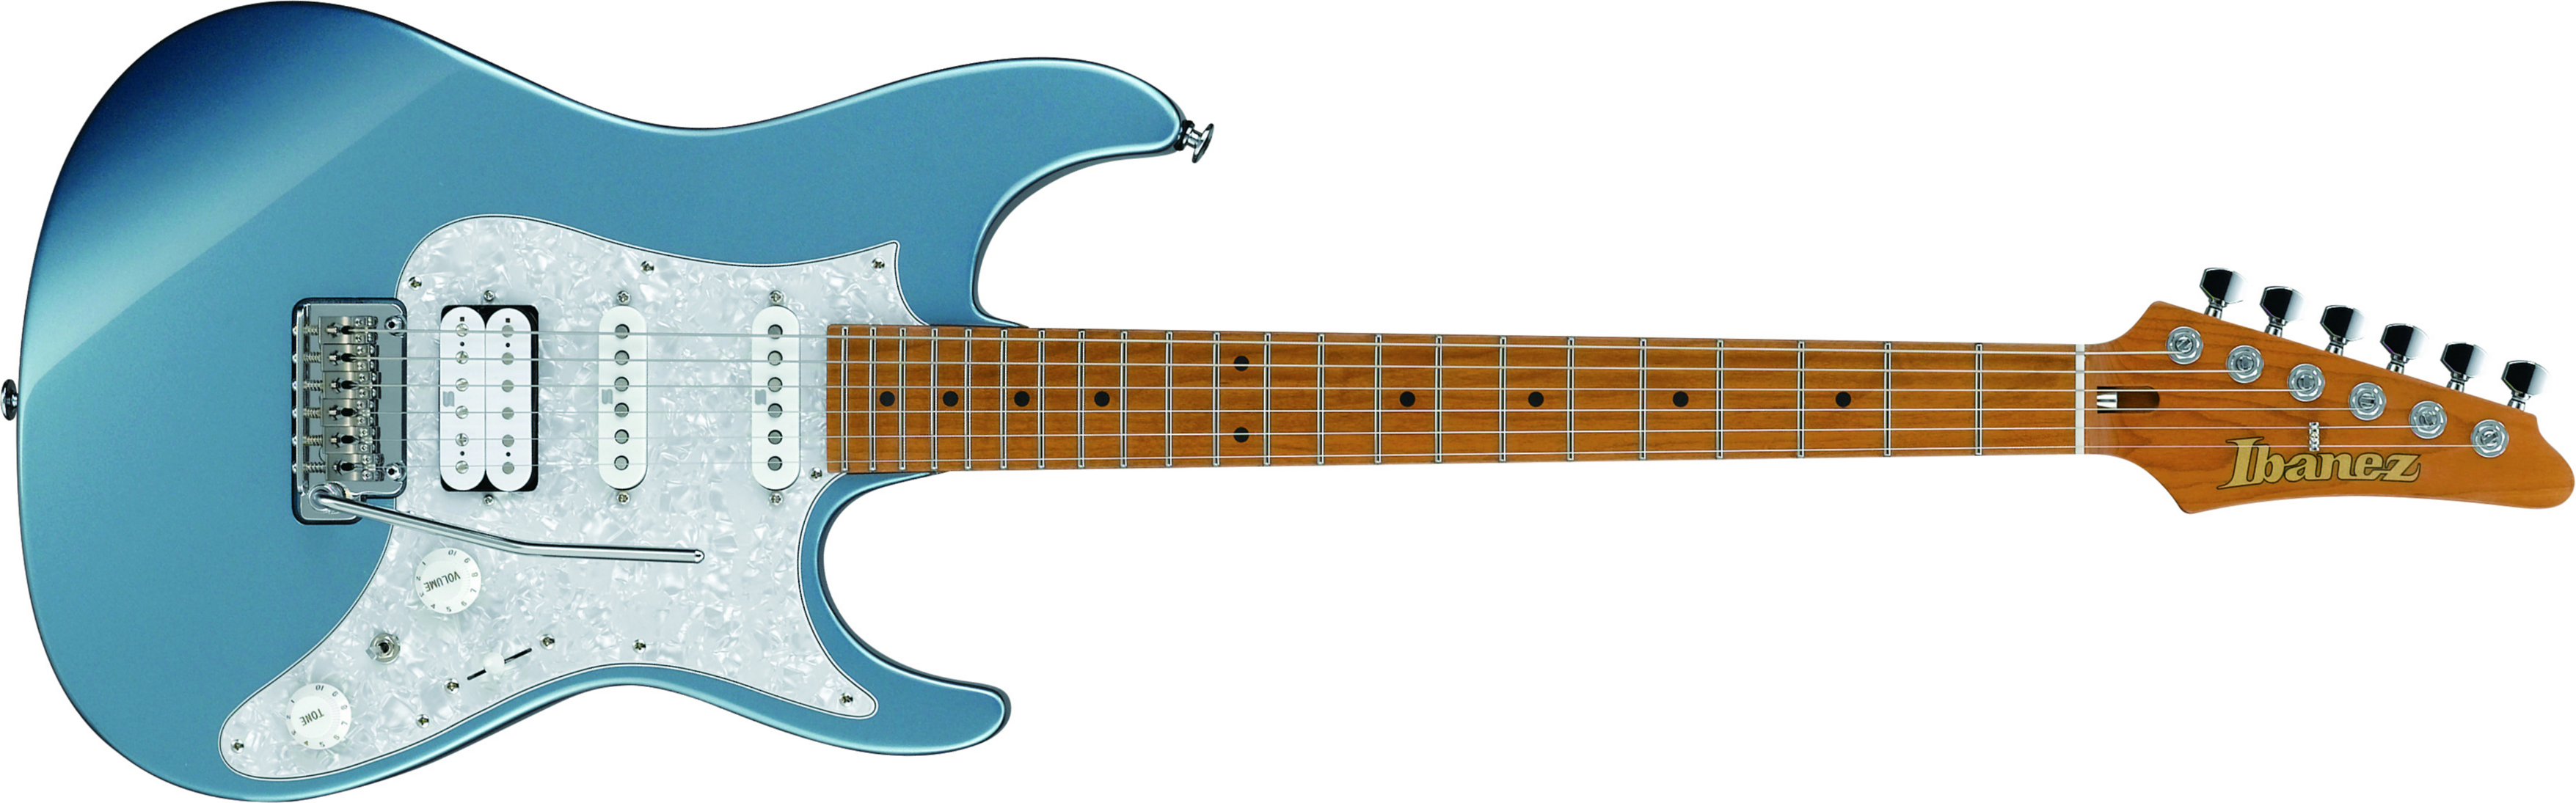 Ibanez Az2204 Icm Prestige Jap Hss Trem Mn - Ice Blue Metallic - Guitarra eléctrica con forma de str. - Main picture